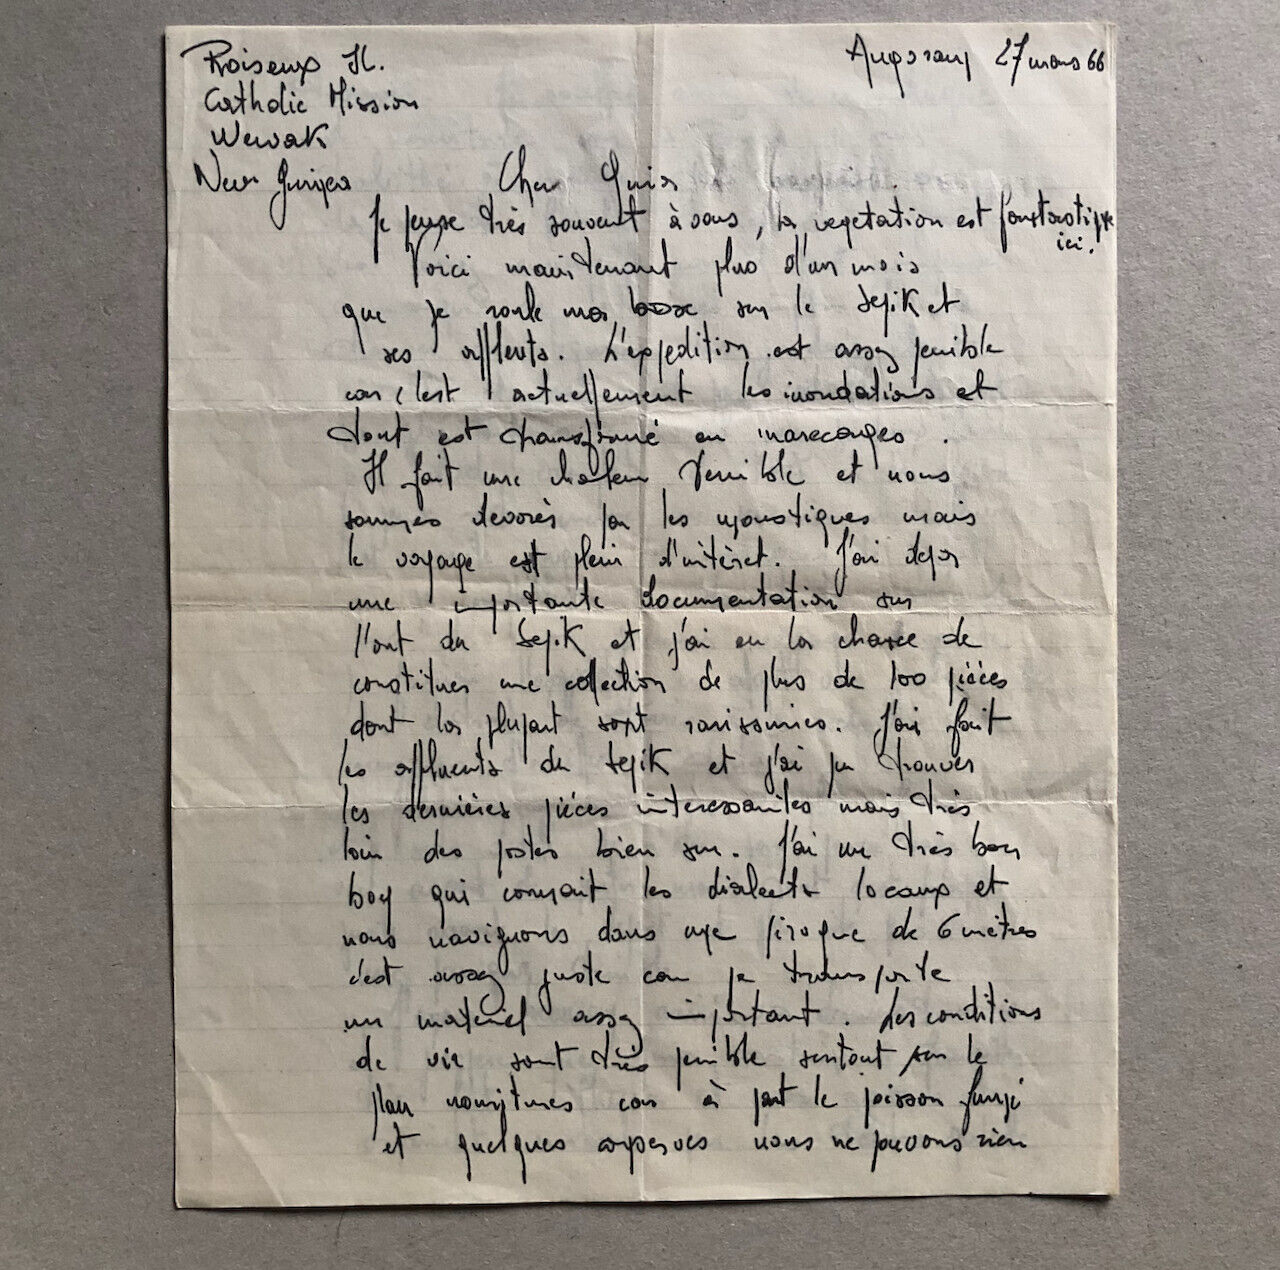 Jean Guiart — Fleuve Sepik Nouvelle Guinée  Lettre manuscrite — Kerchache — 1967